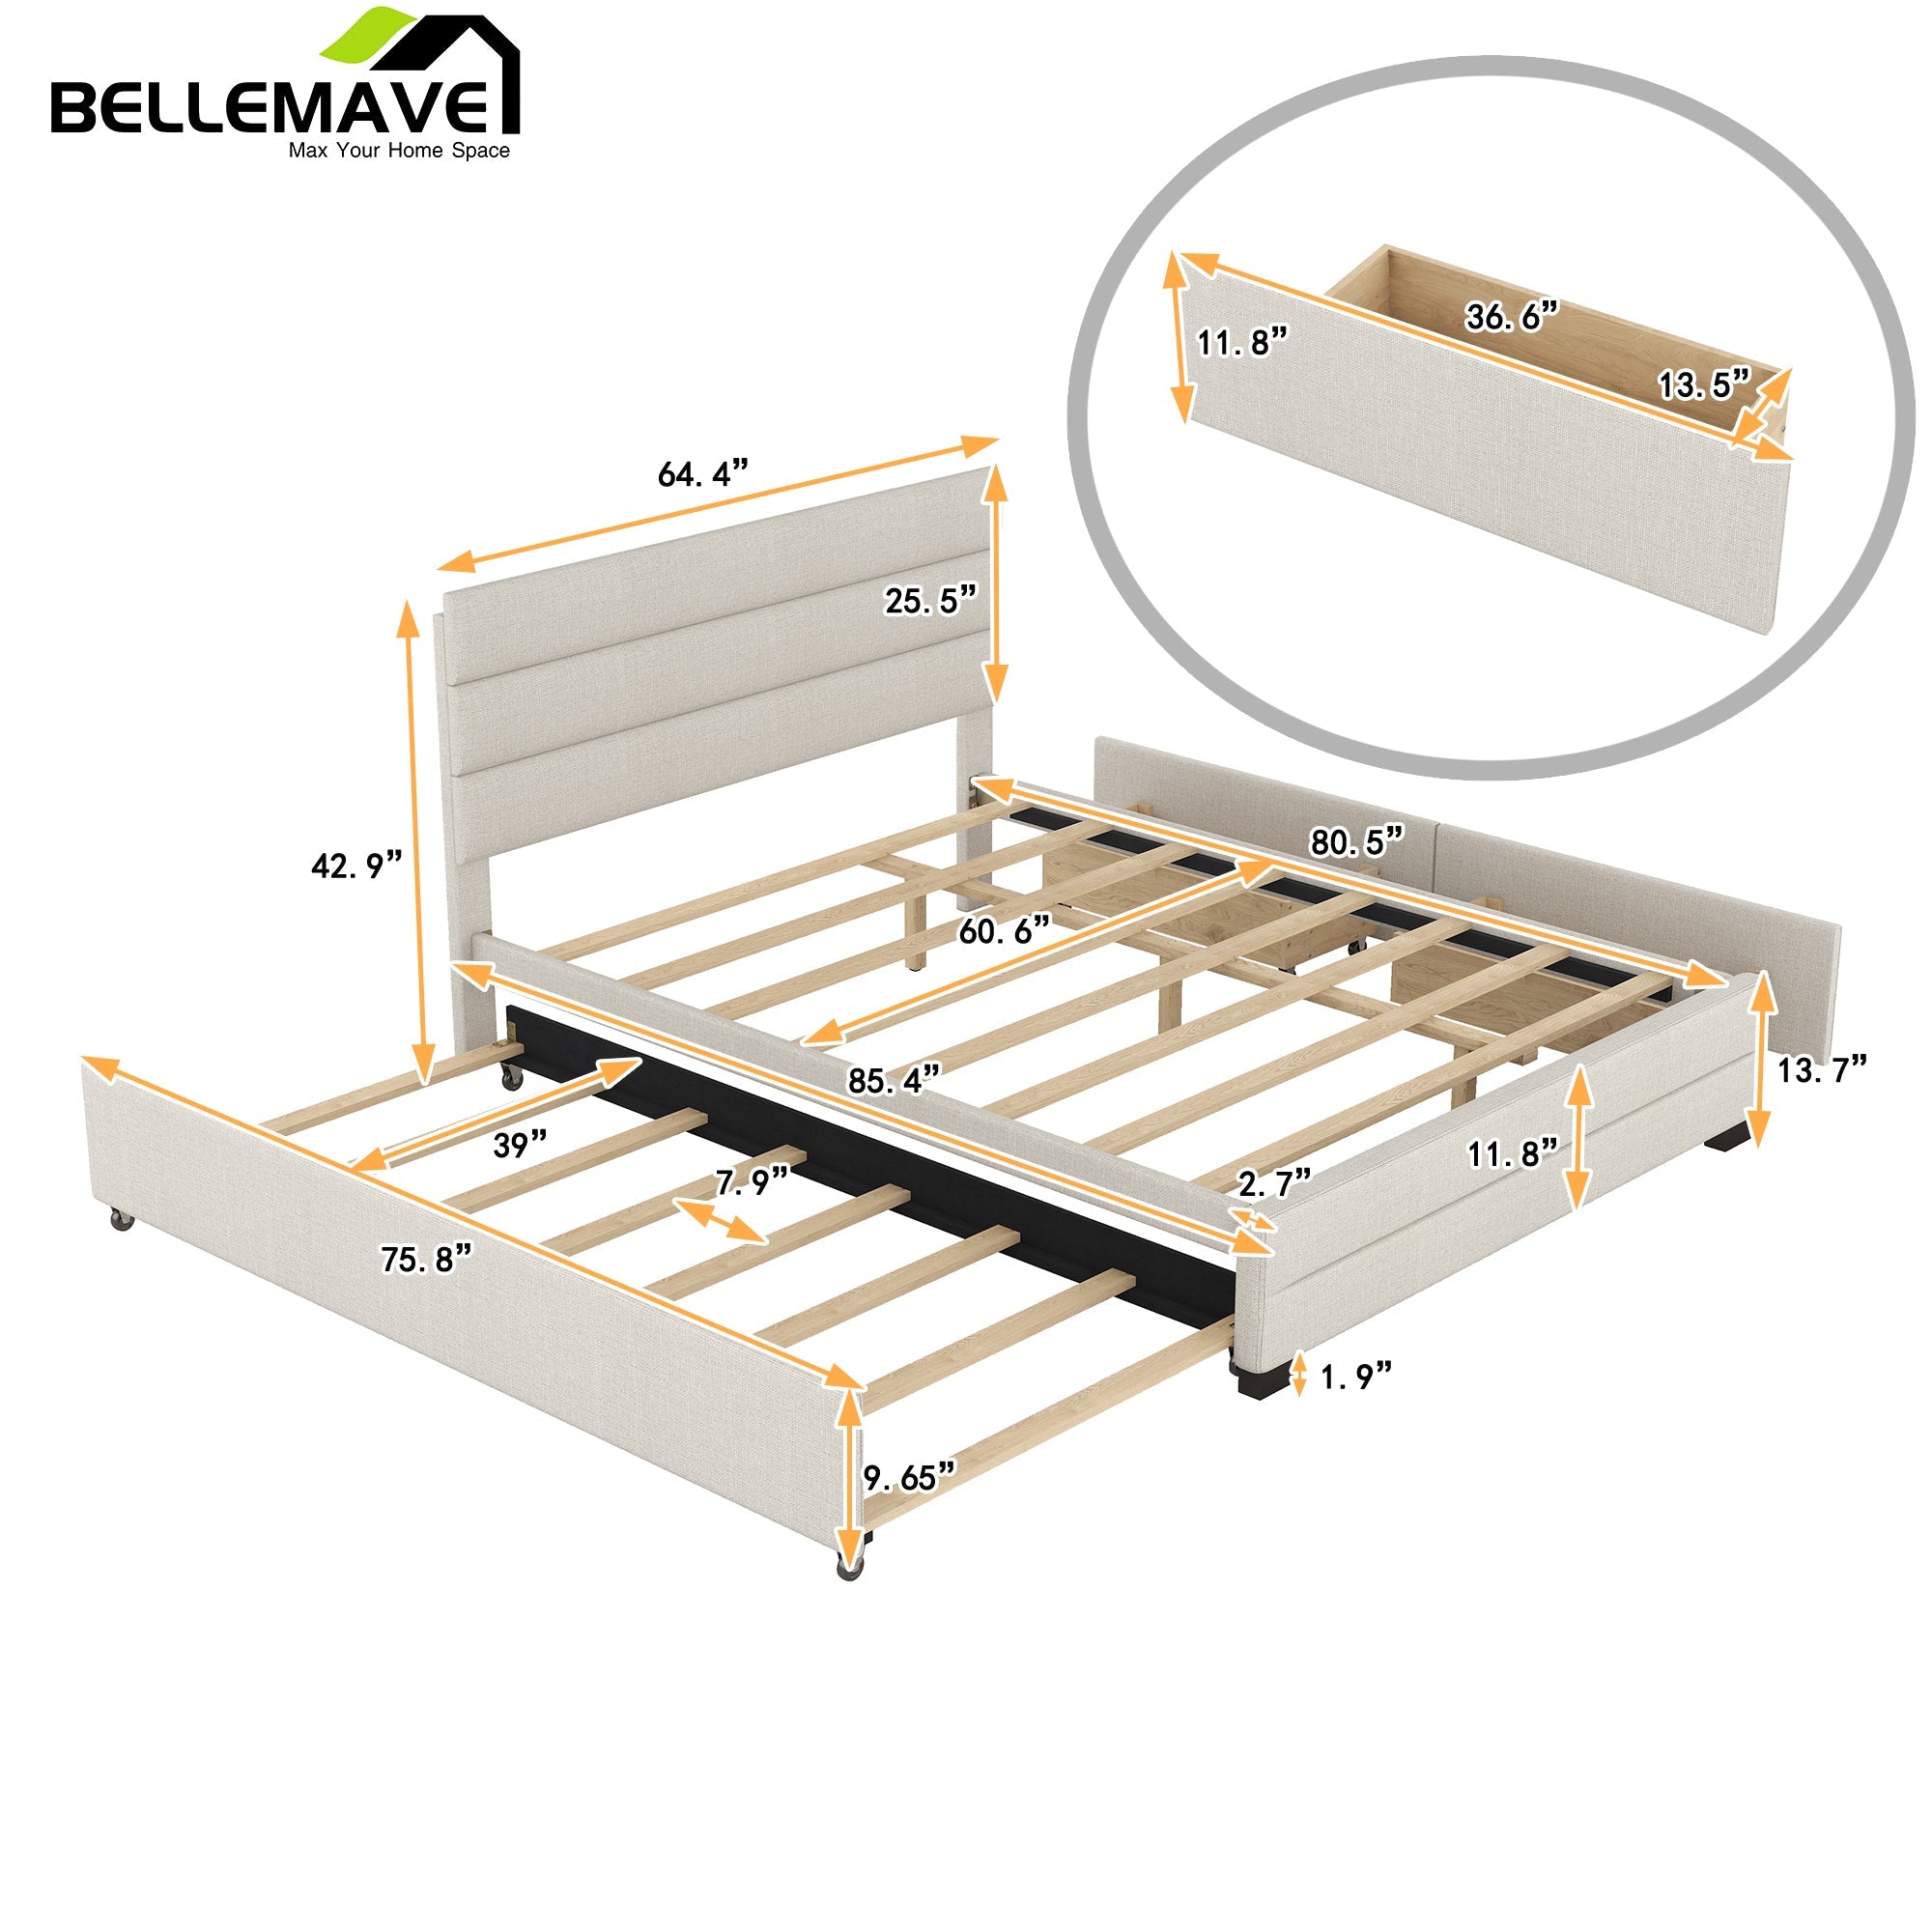 Bellemave Queen Upholstered Platform Bed - Bellemave